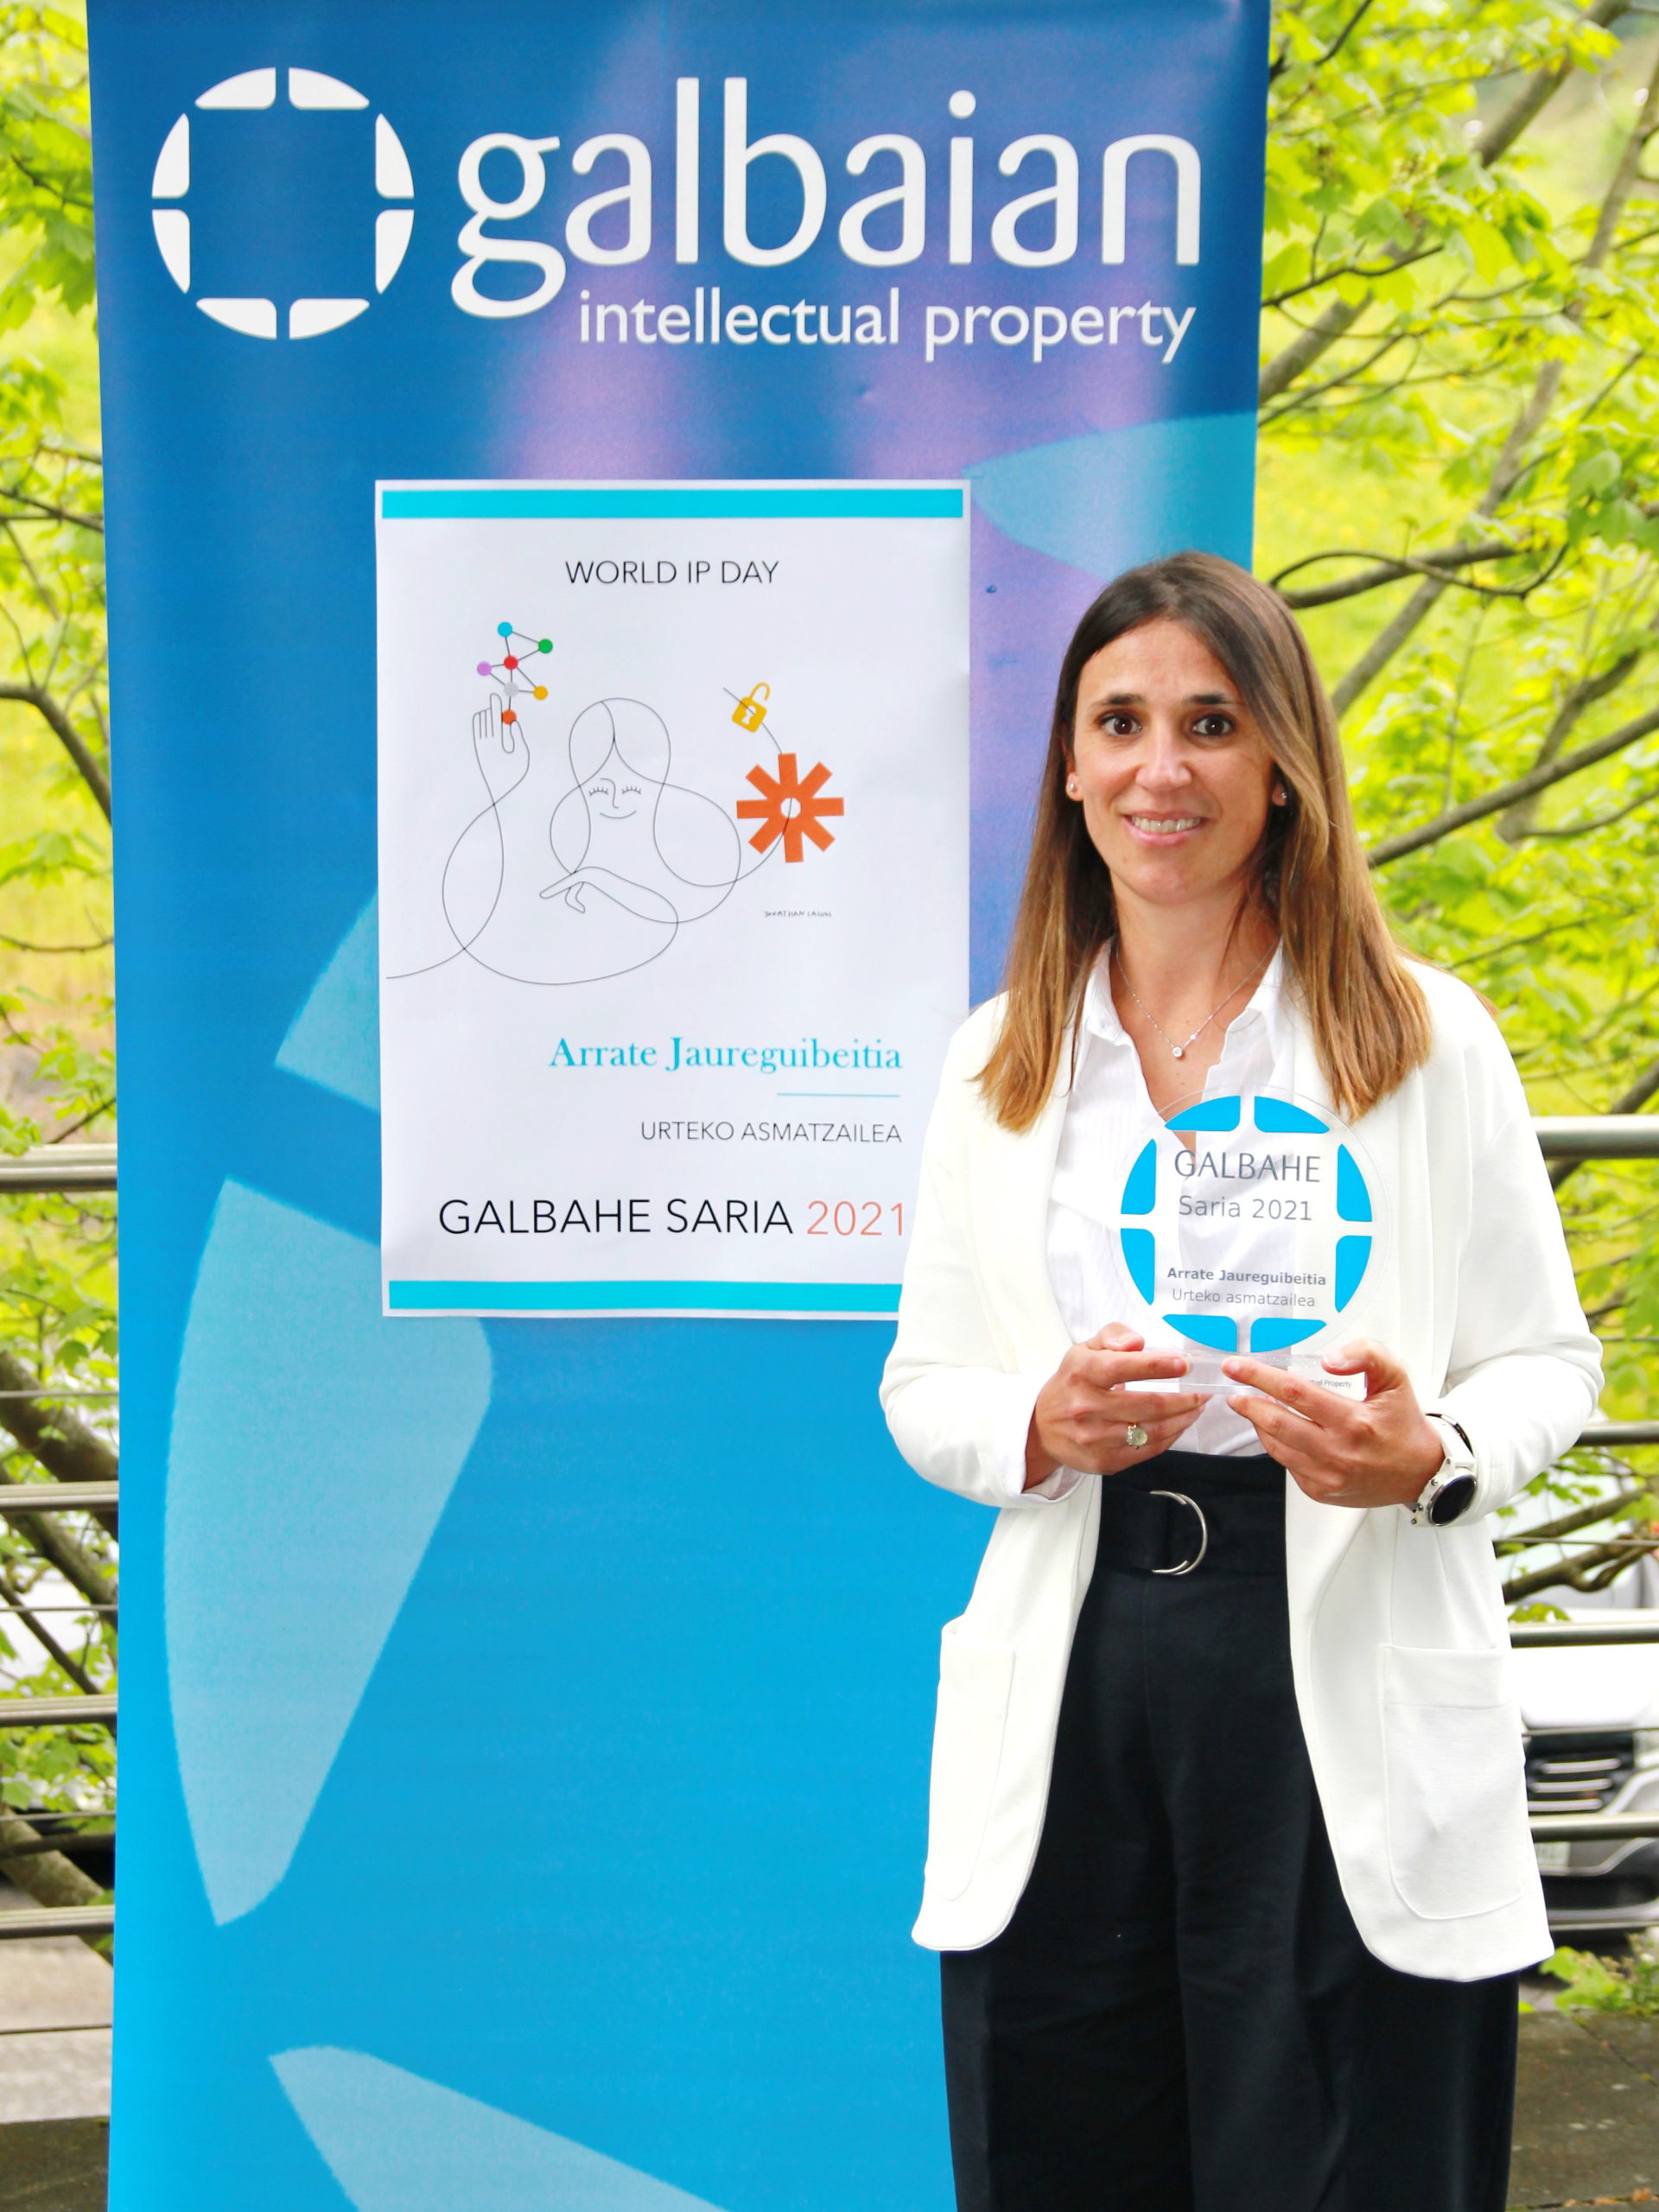 Galbaian celebra el ‘World IP Day’ y hace entrega del premio Galbahe de esta edición